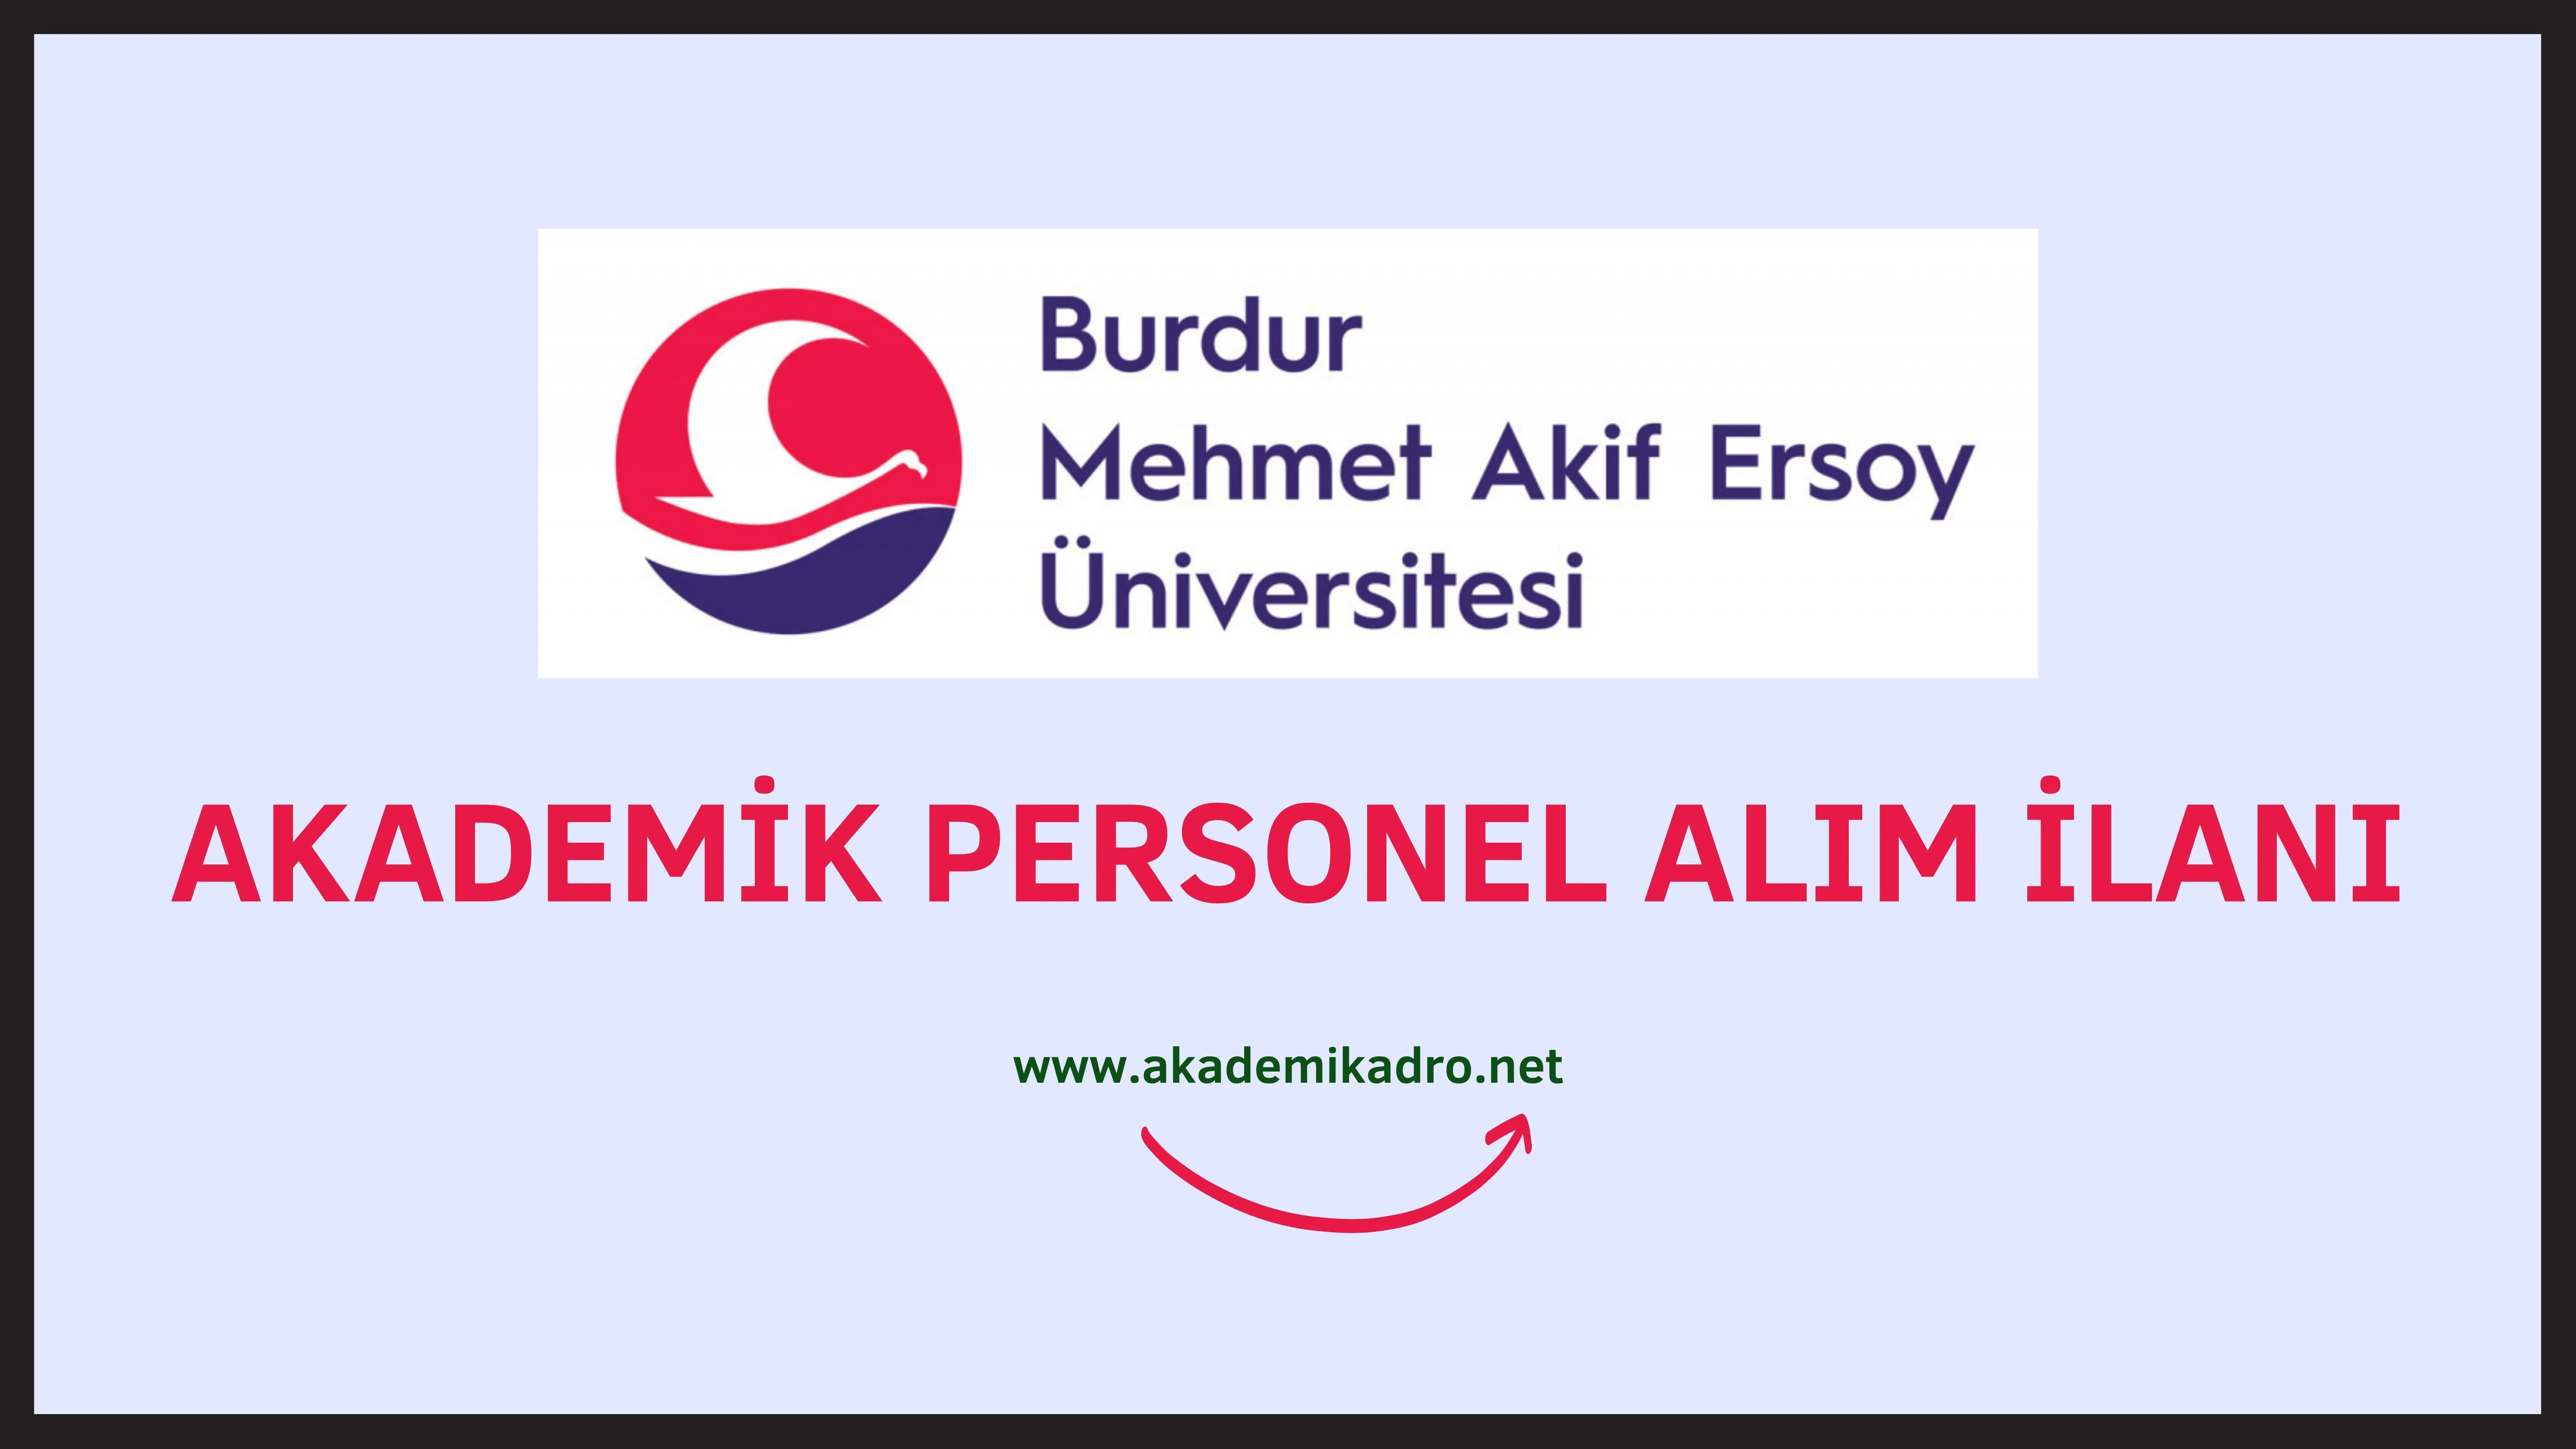 Burdur Mehmet Akif Ersoy Üniversitesi birçok alandan 42 Akademik personel alacak.